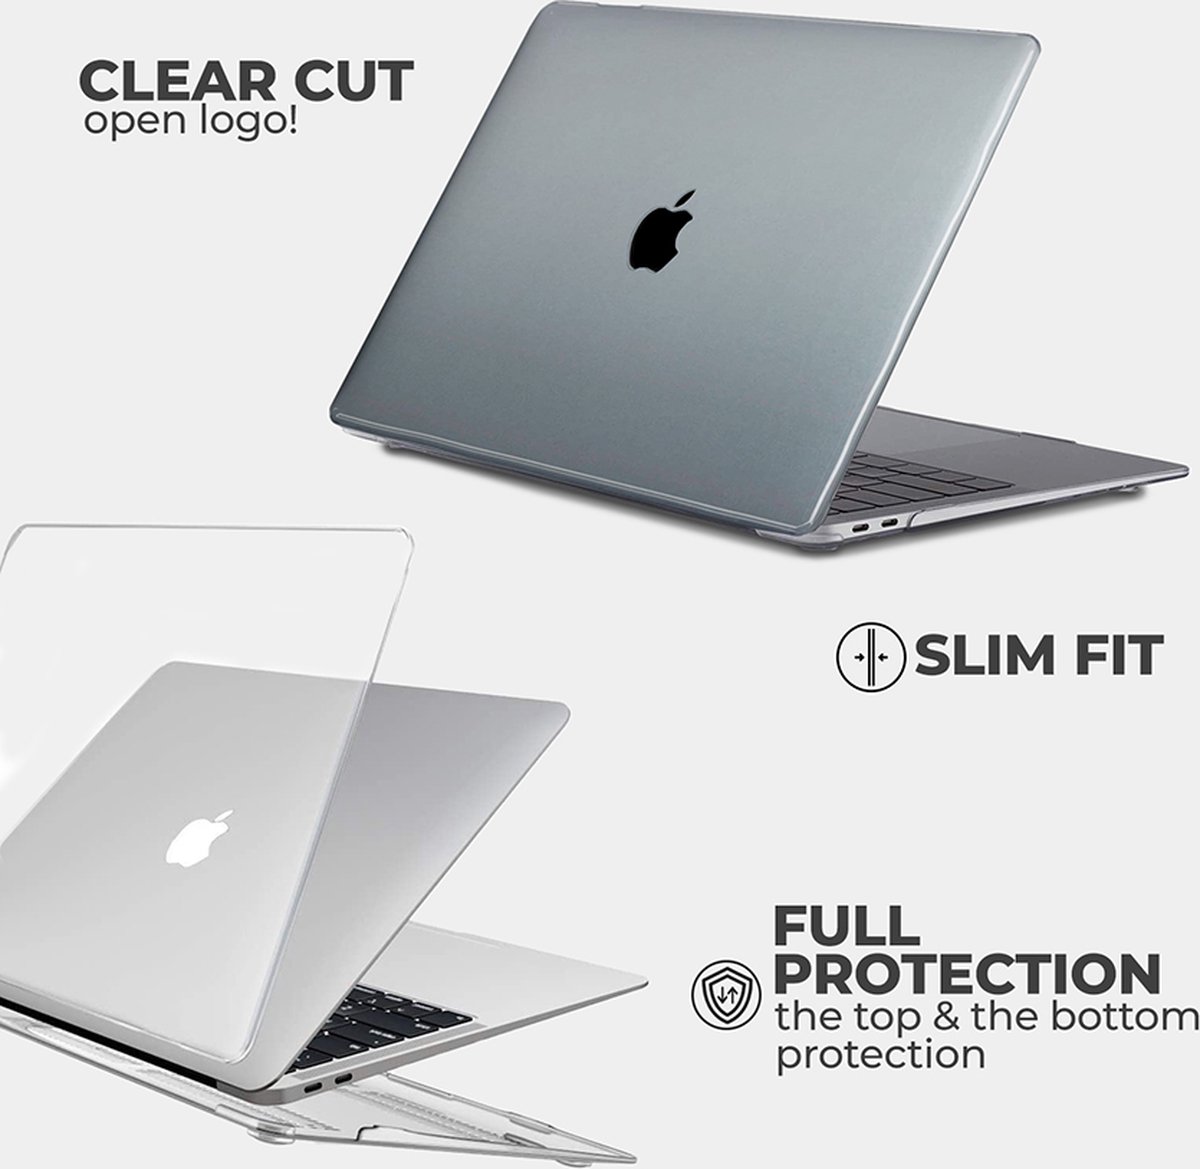 Coque MacBook Air - Fleurs